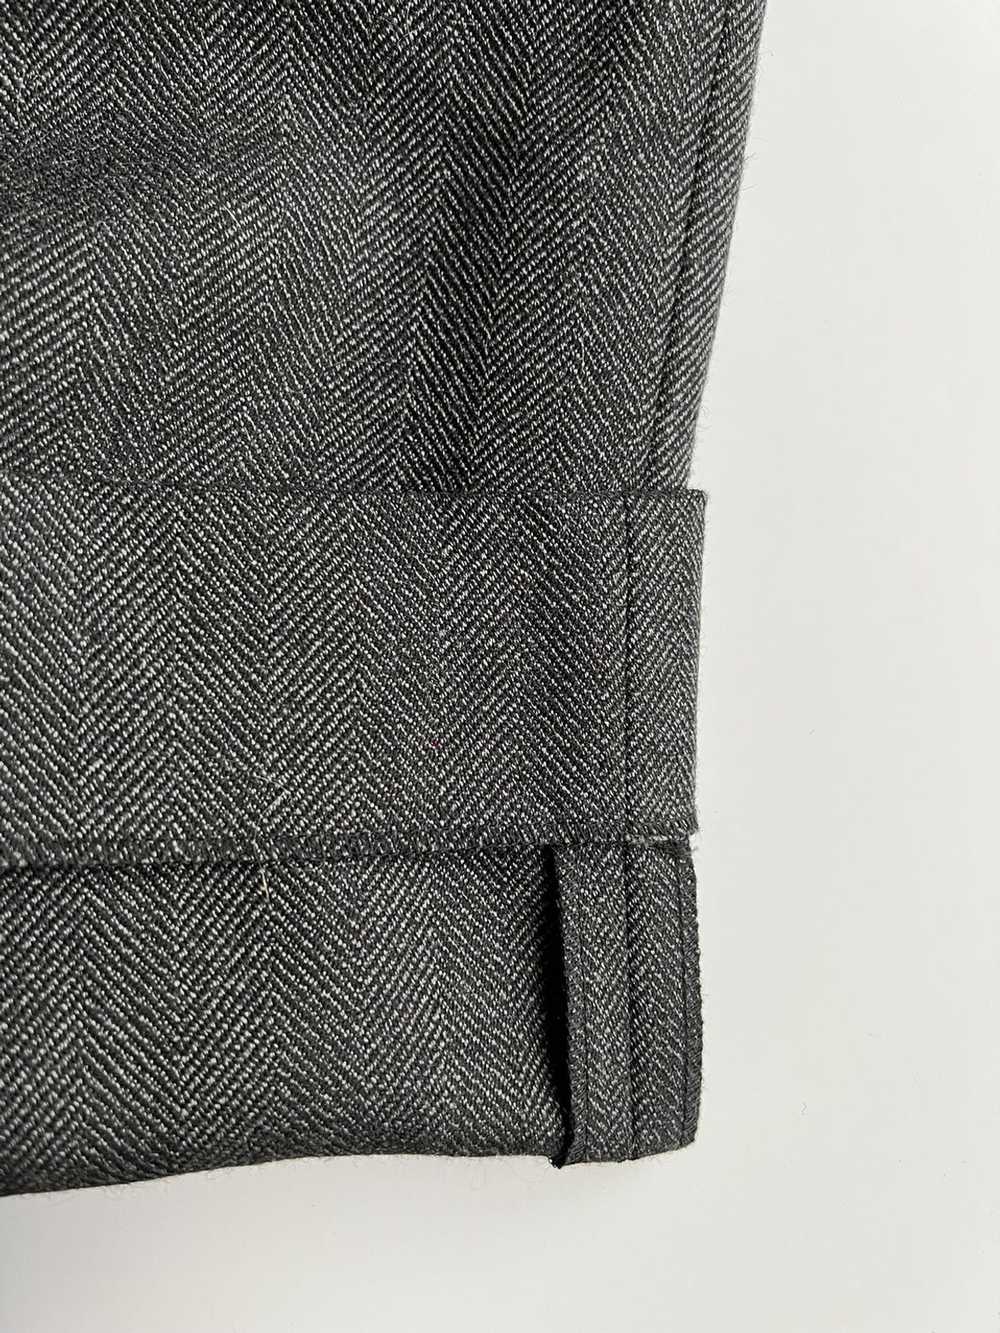 Balenciaga Grey Wool Balenciaga Trouser - image 5